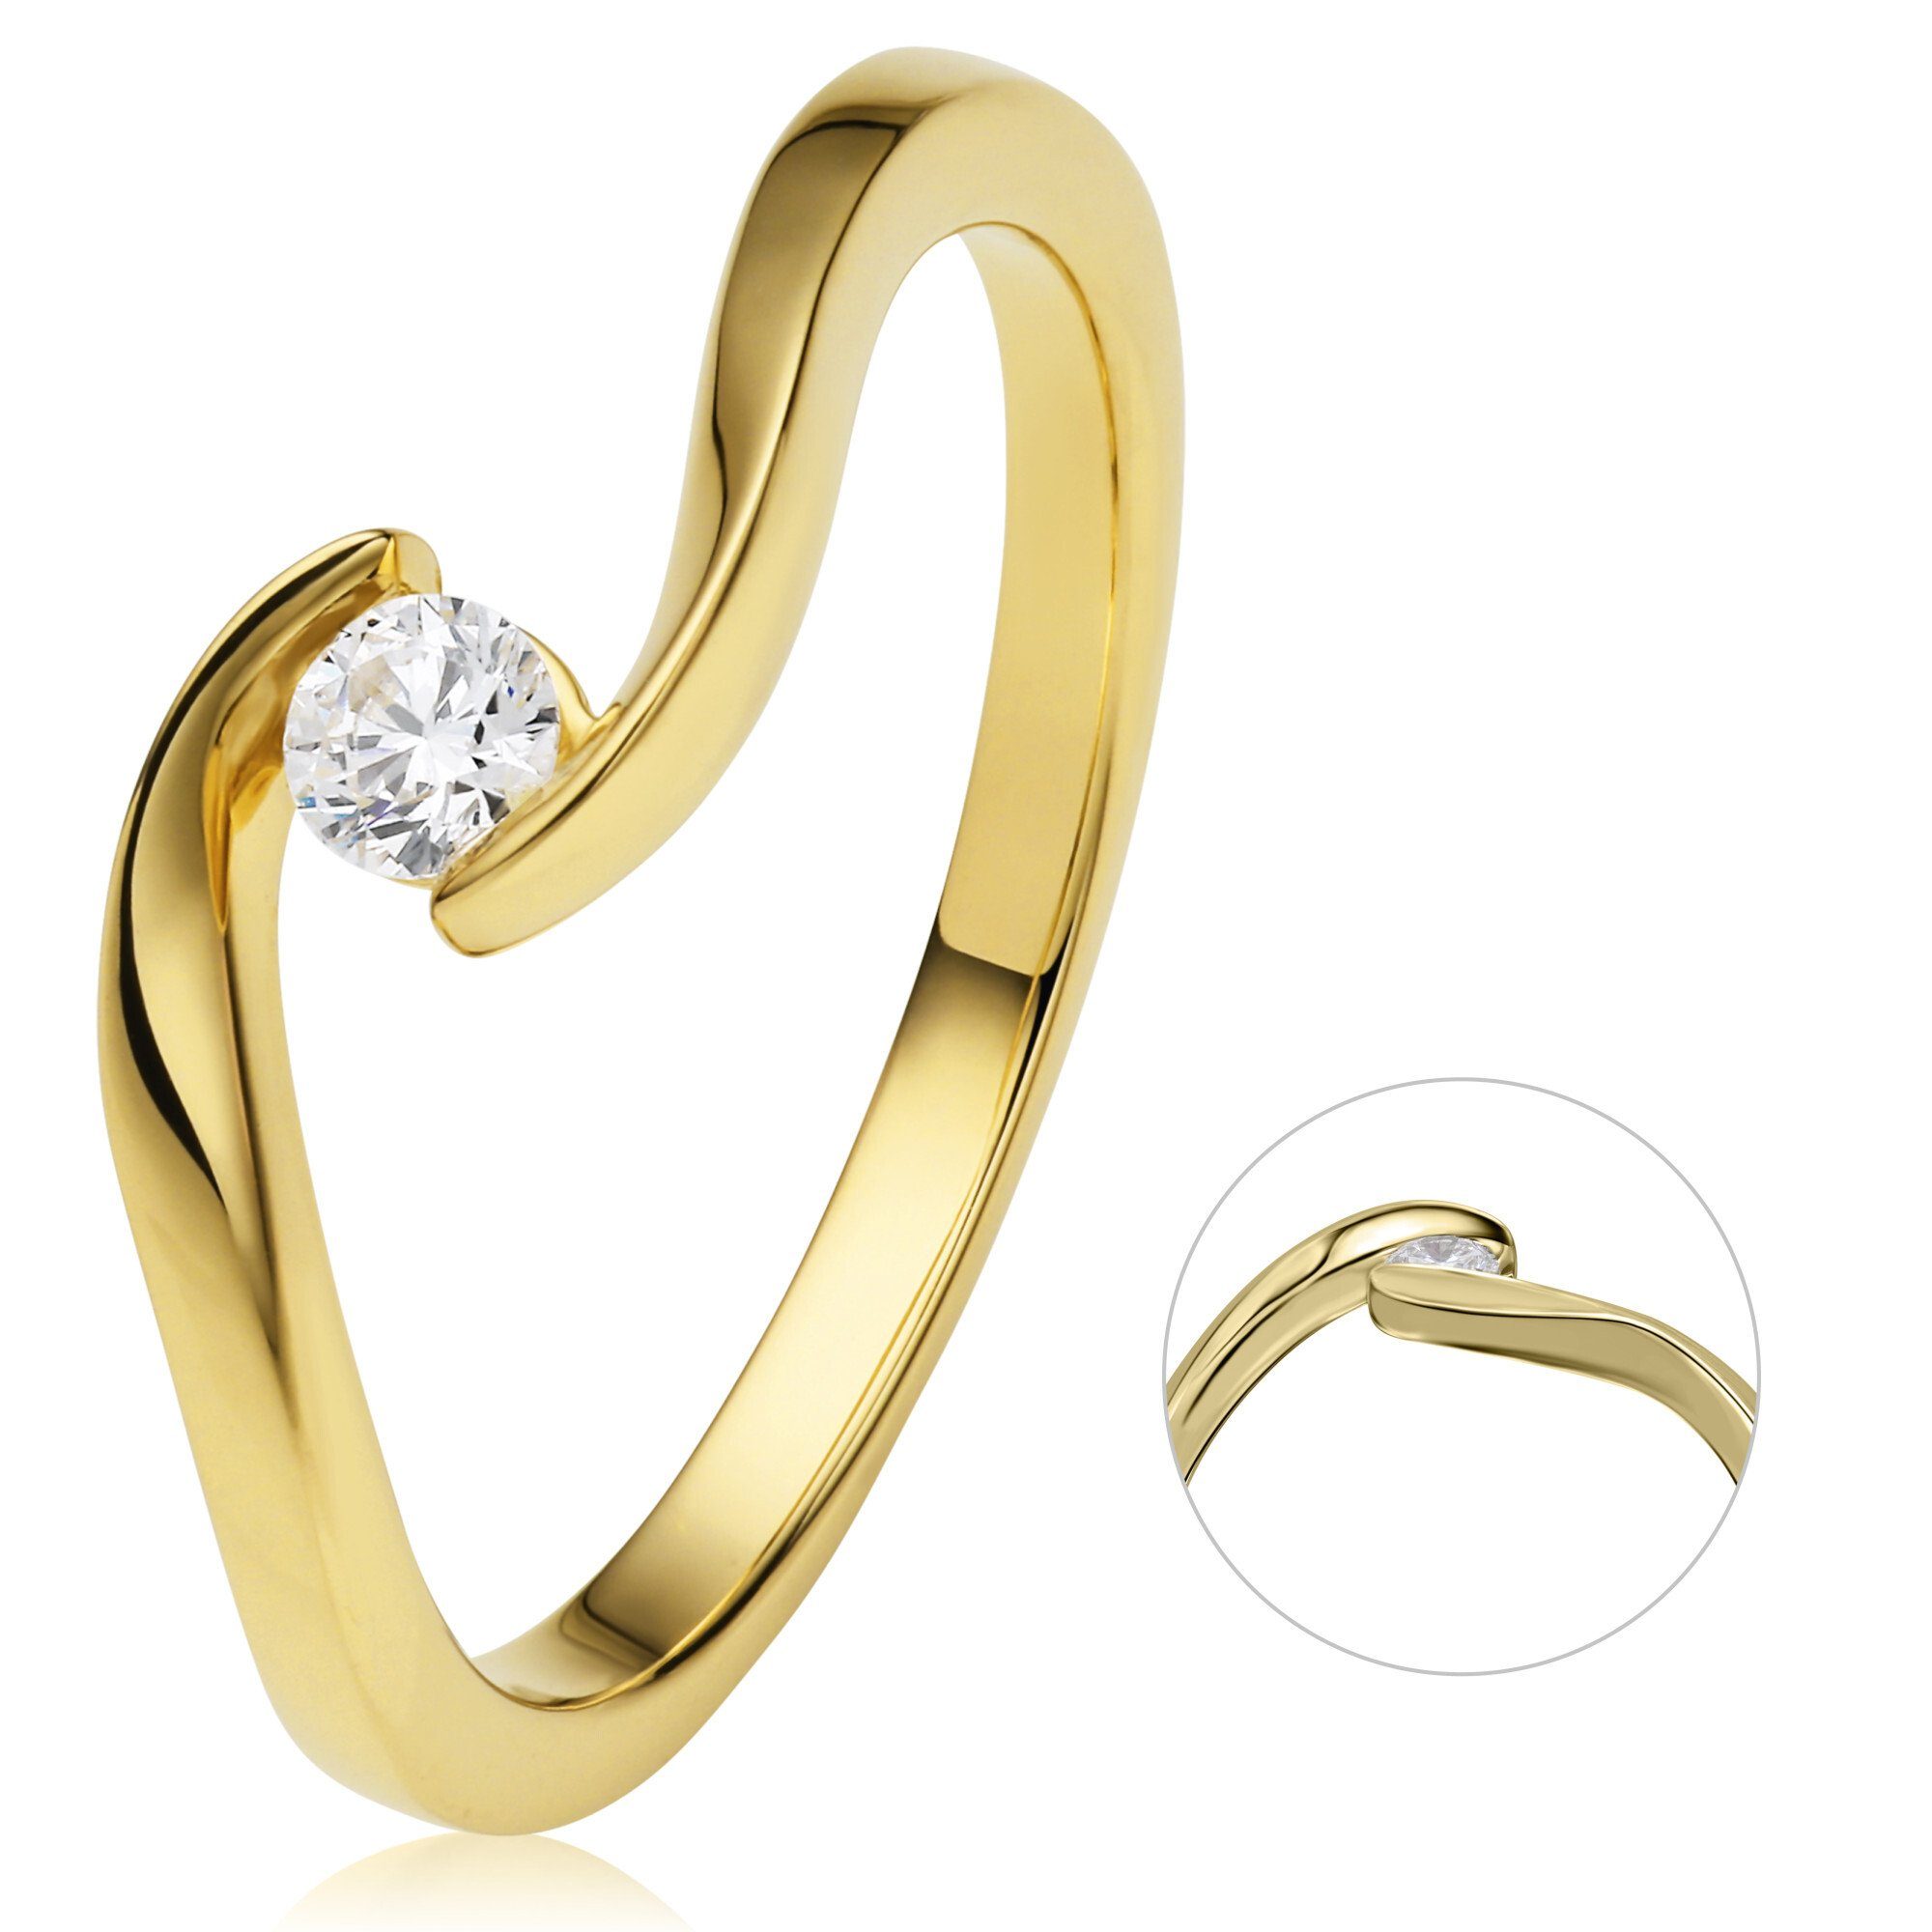 ONE ELEMENT Diamantring 0,15 ct Spannfassung Gold Ring Gelbgold, Schmuck Damen Spannfassung Brillant Diamant 750 aus